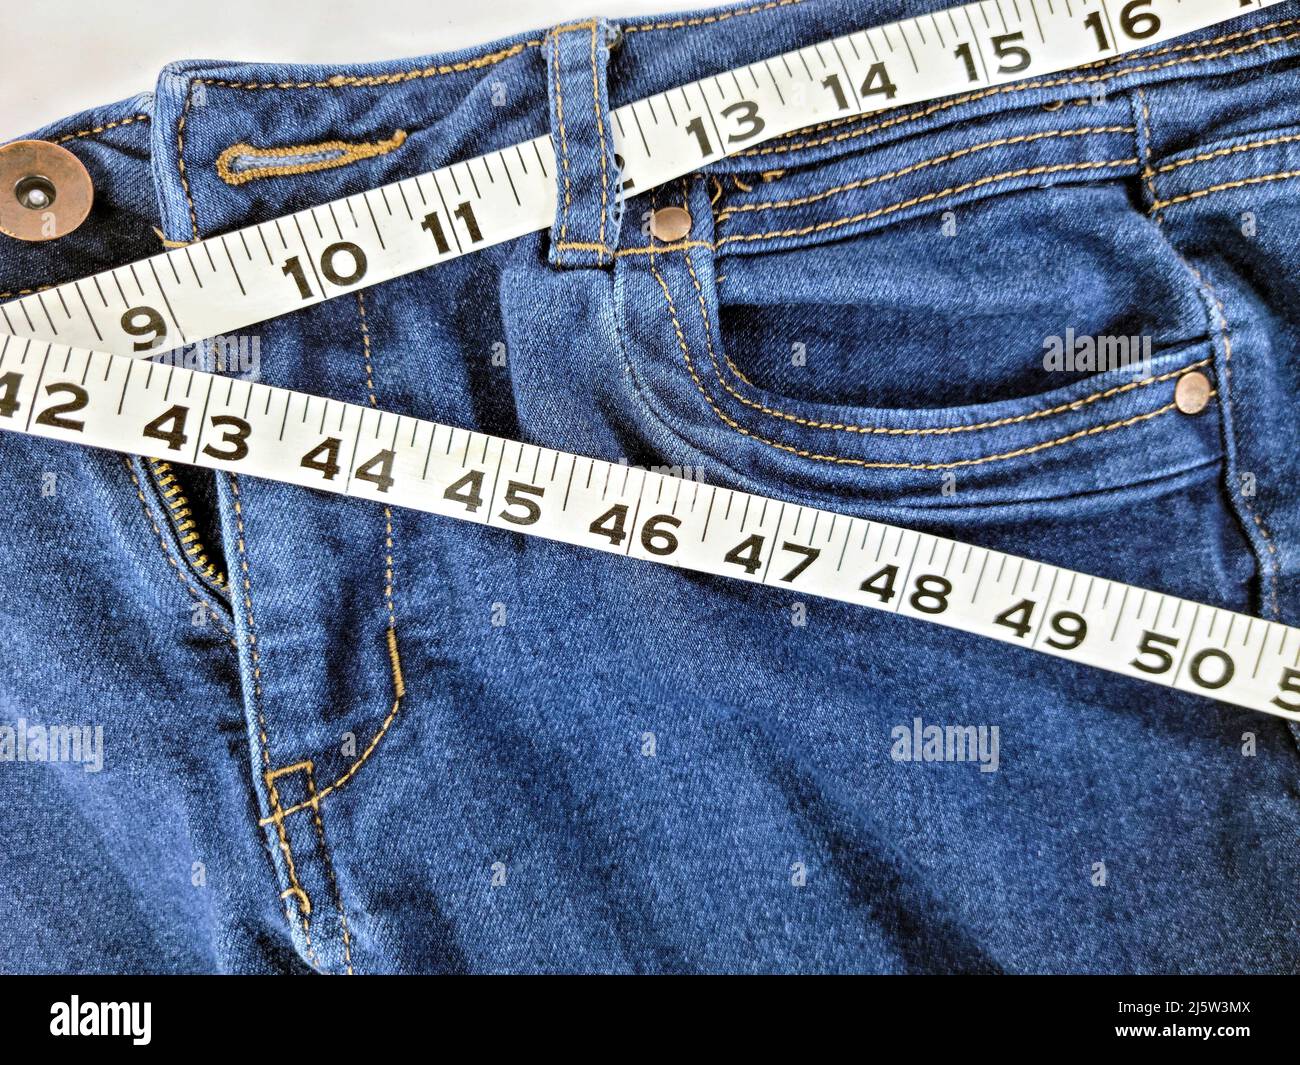 Primer plano de la cinta métrica en la cintura jean azul denim Foto de stock